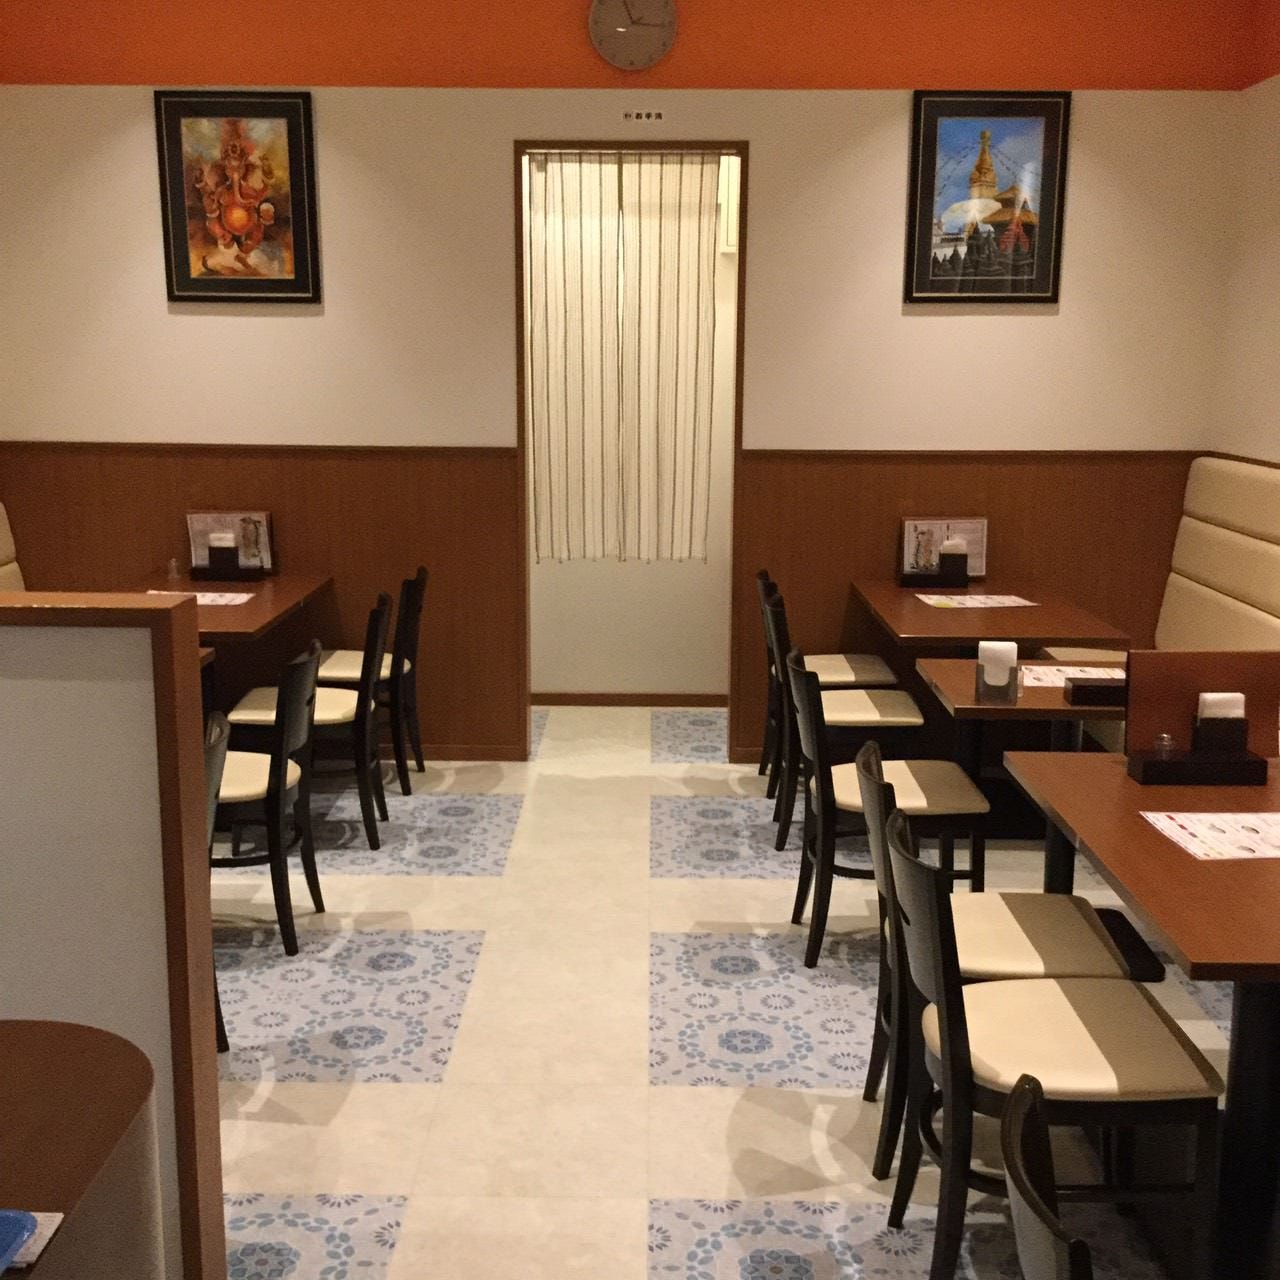 インド・ネパール料理 ディープマハル パピオスあかし店